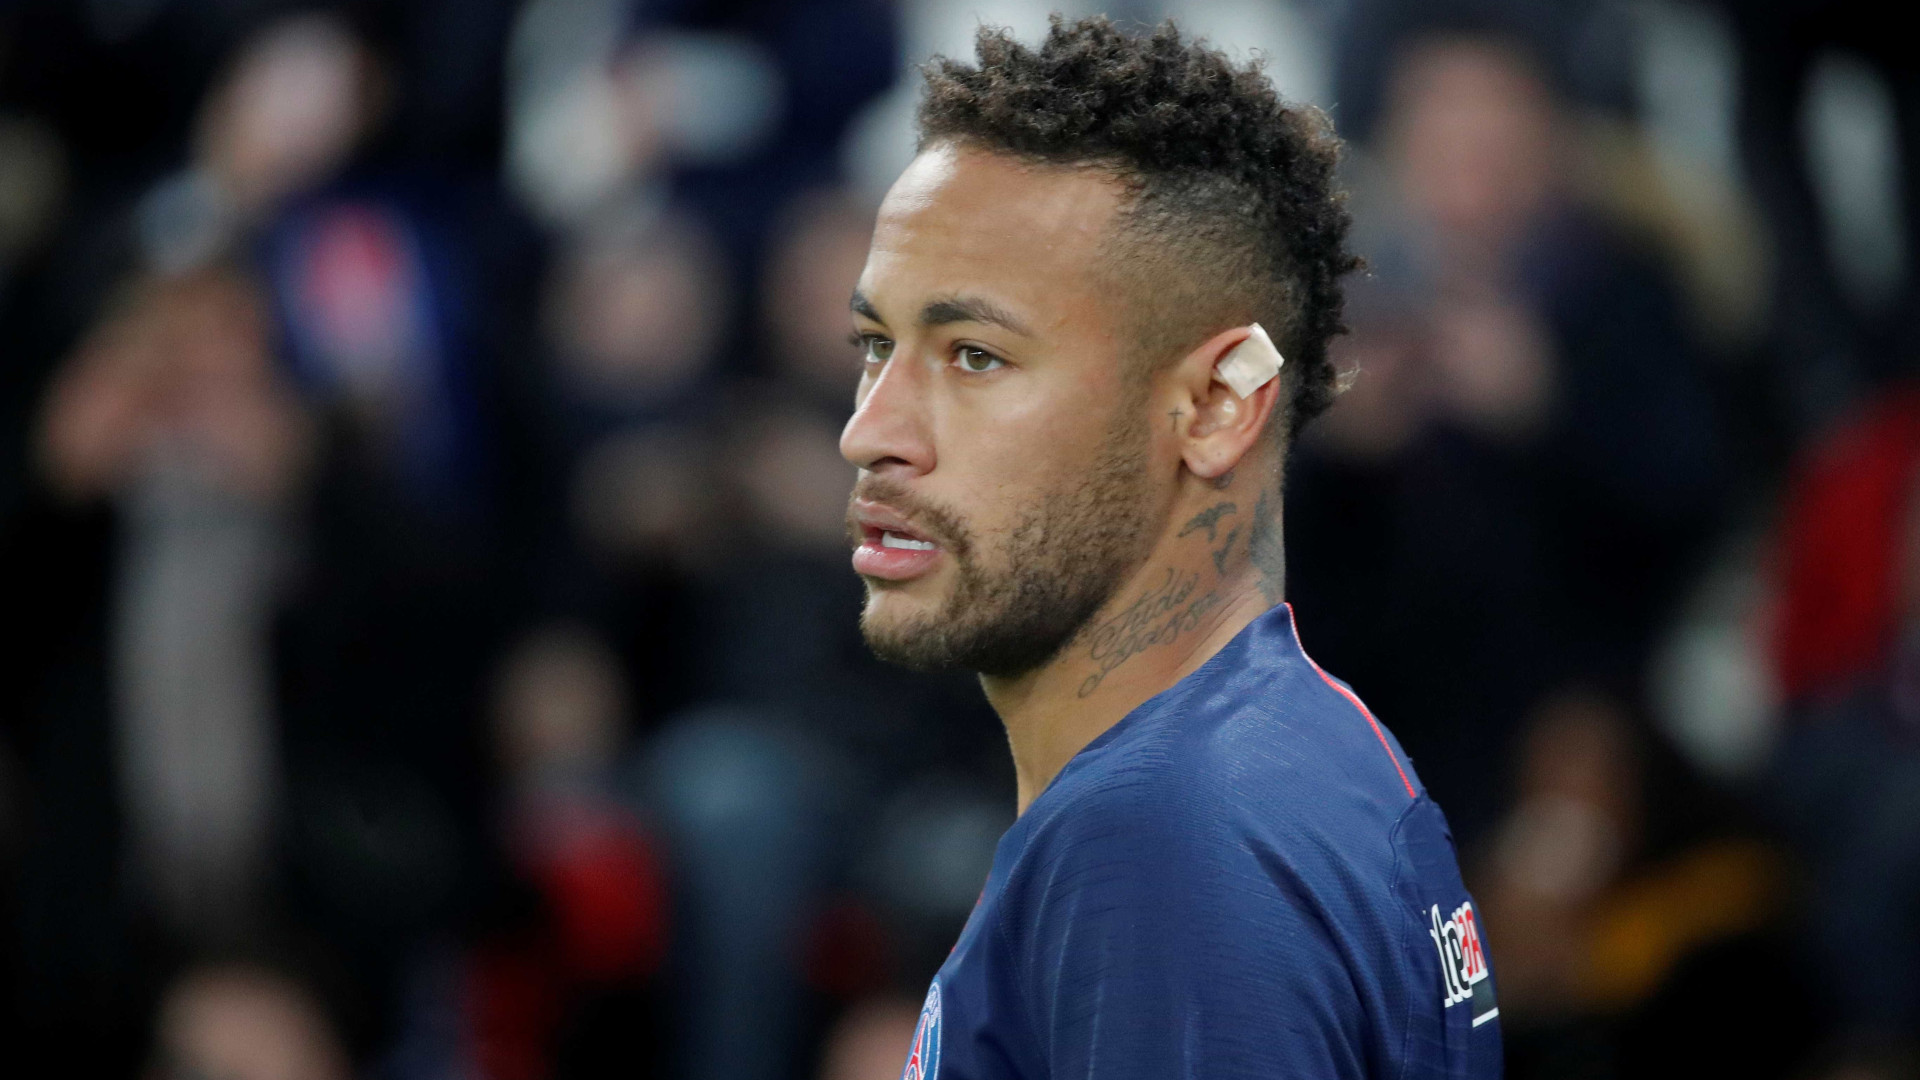 Com Neymar na tribuna, PSG joga por vaga na Liga dos Campeões